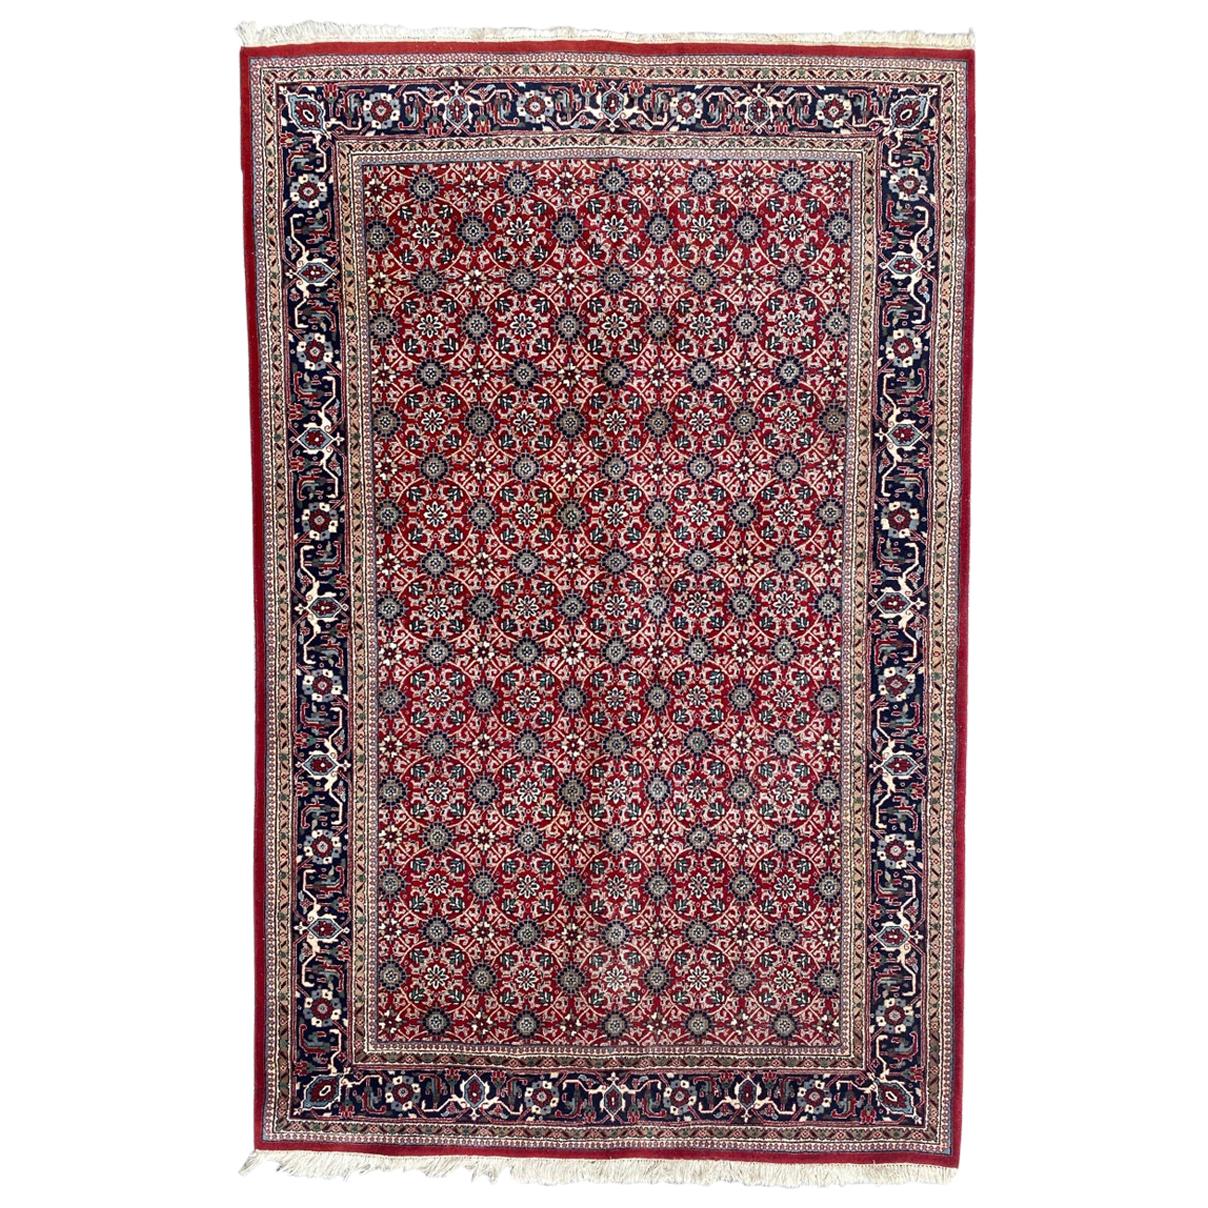 Bobyrug's Hübscher Vintage-Indianer-Teppich